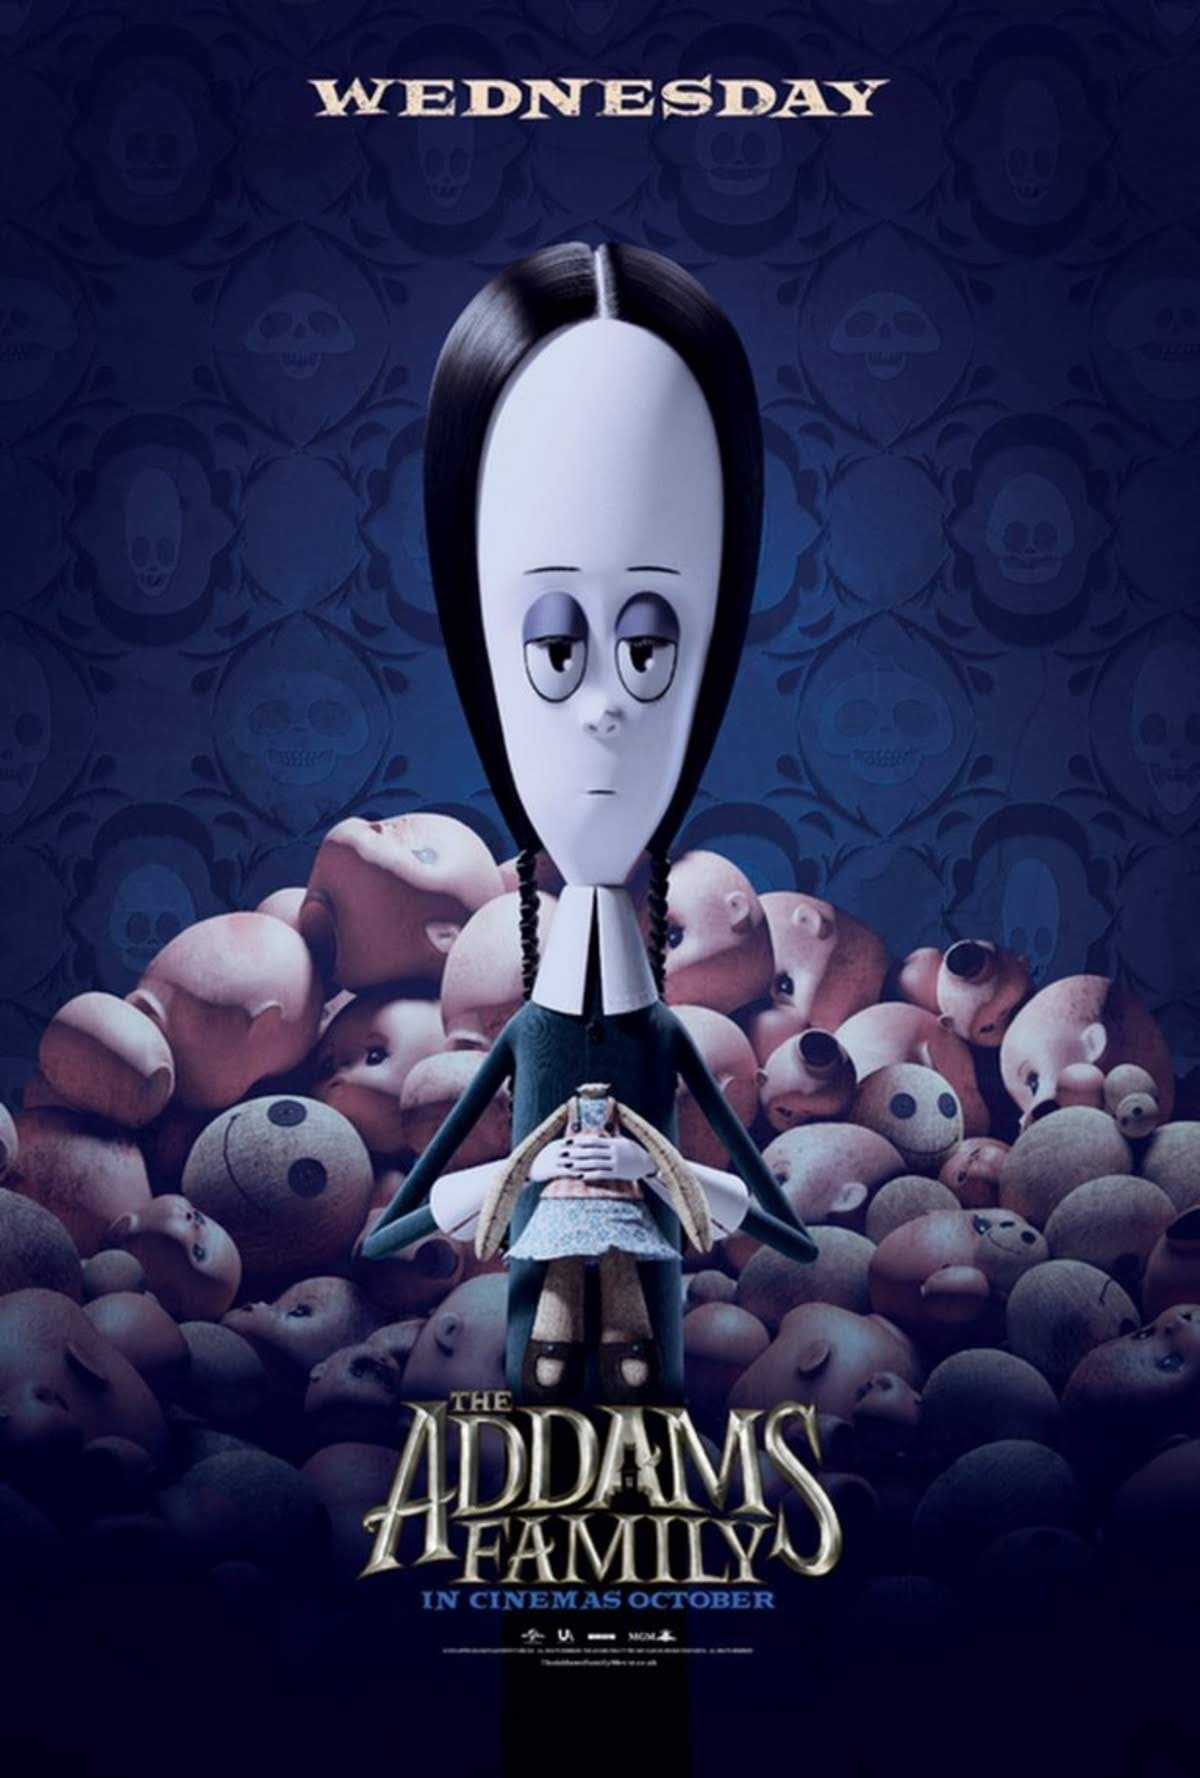 Chloe Moretz At The Addams Family Premiere 人気キャラのウェンズデーの声を担当したホラー コメディ アニメ の最新作 アダムス ファミリー のプレミア上映のクロエ モレッツちゃん Cia Movie News